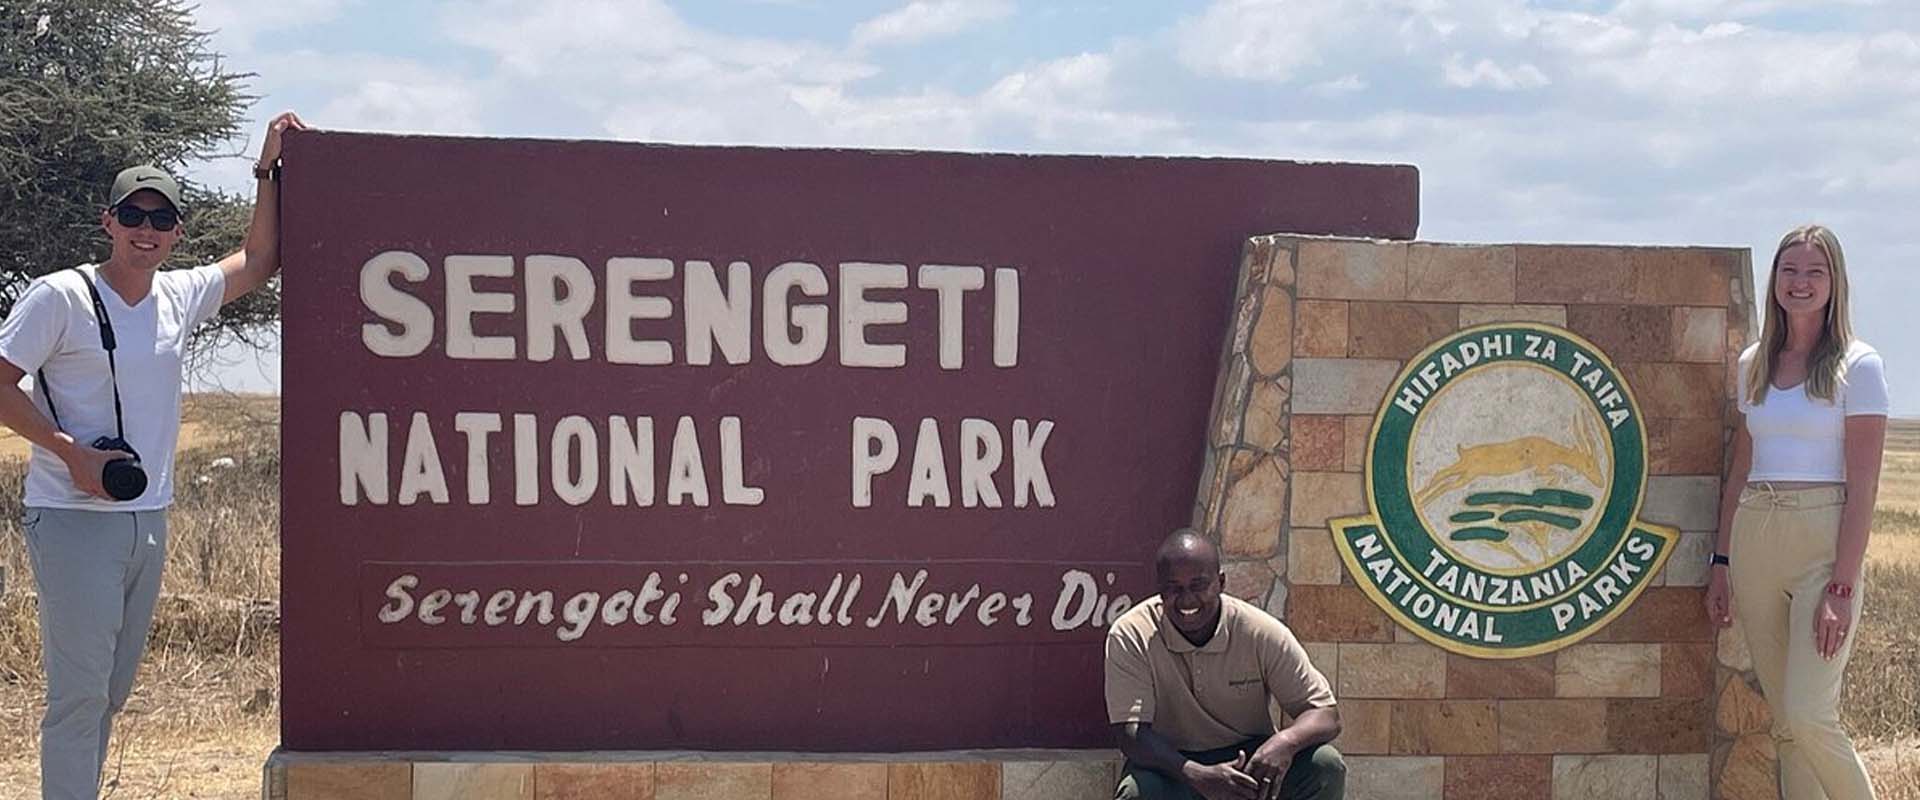  Serengeti Safari Packages